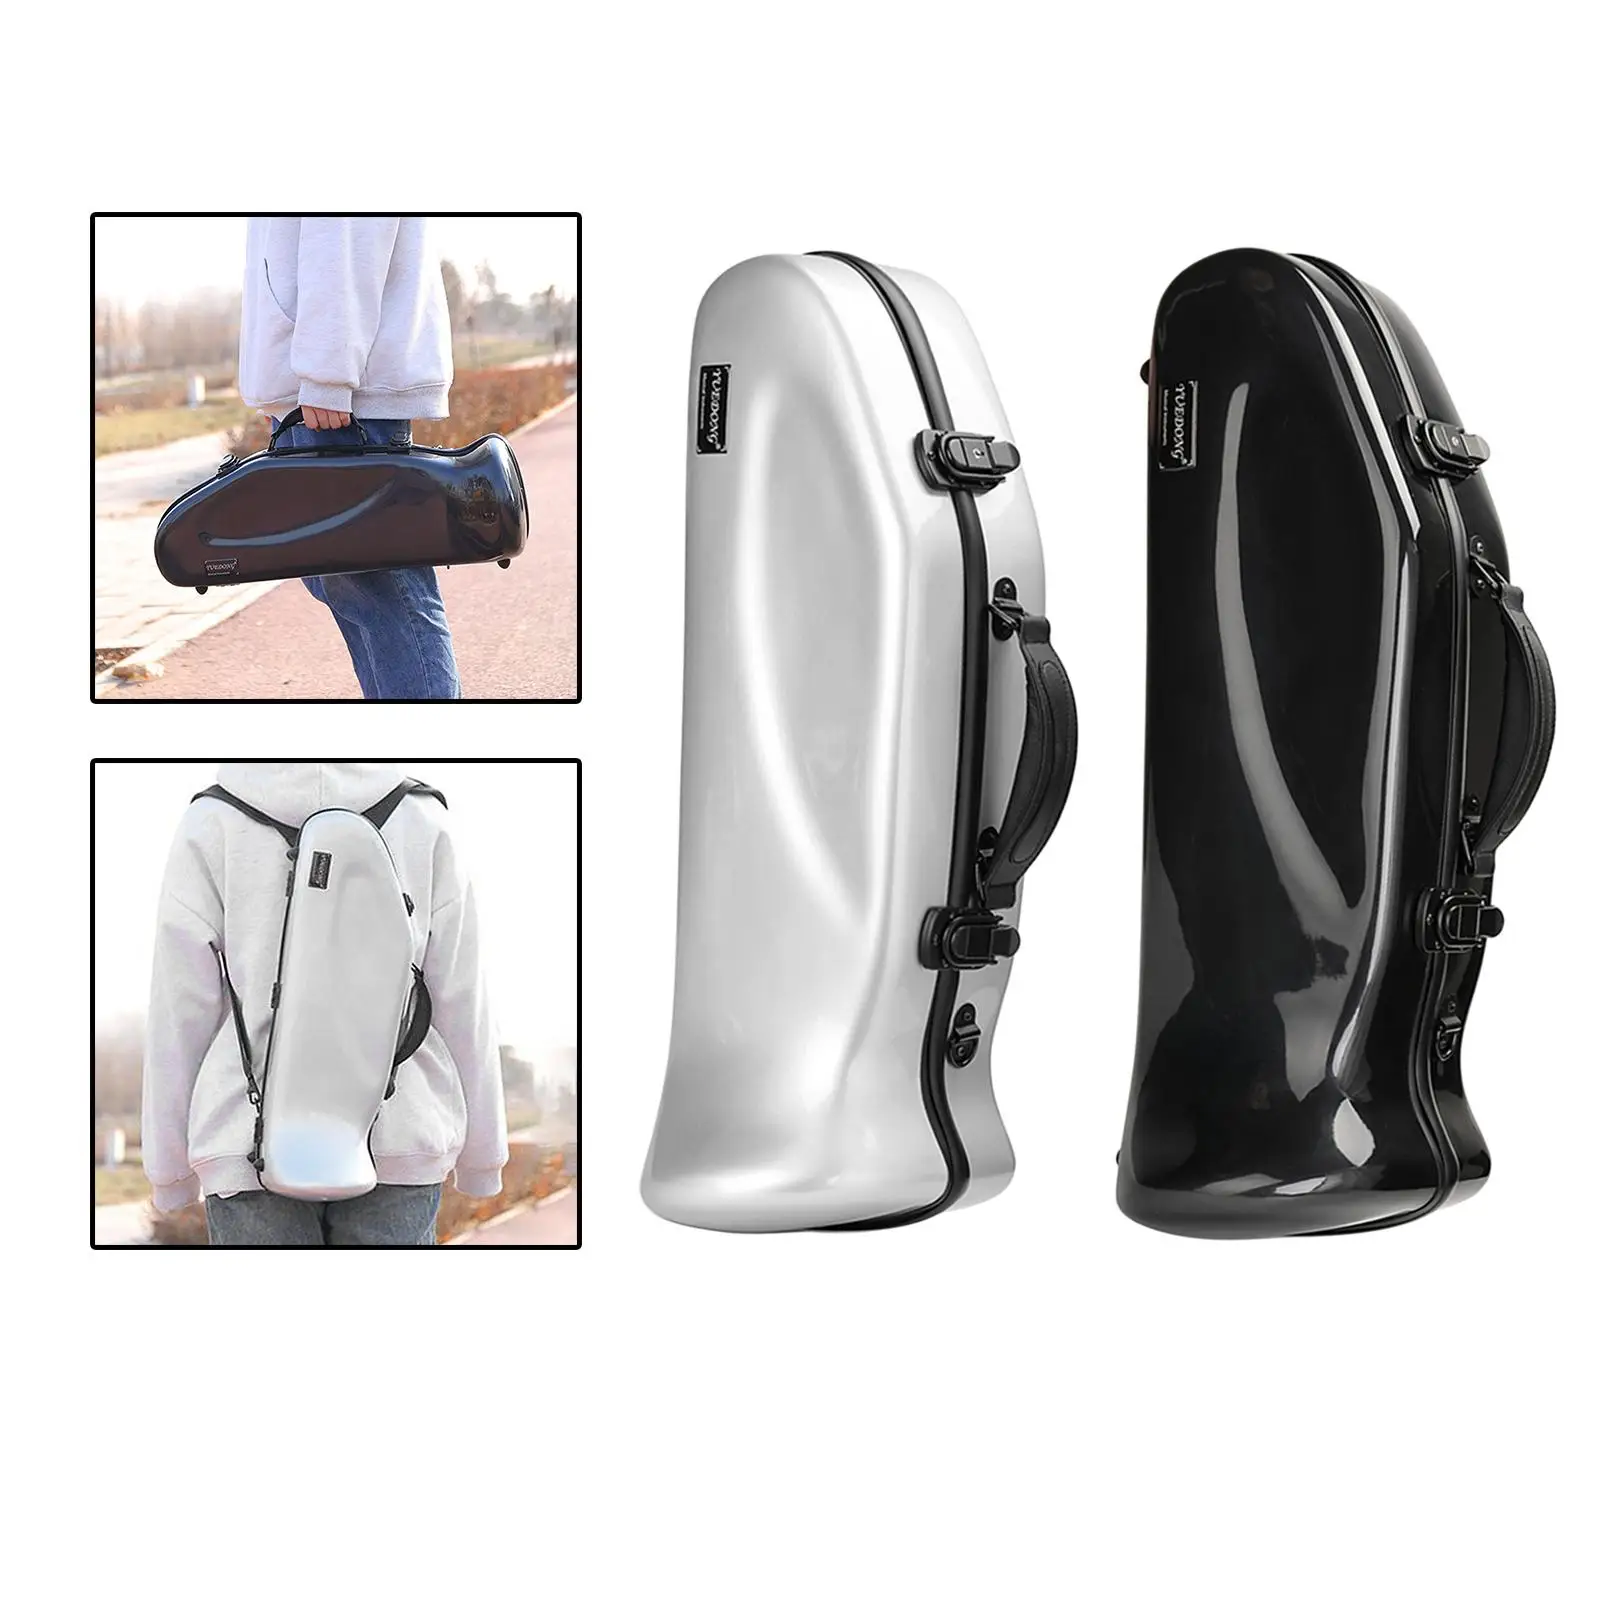 Trumpet Case Adjustable Detachable Backpack Frp with Shoulder Strap Instrument Case